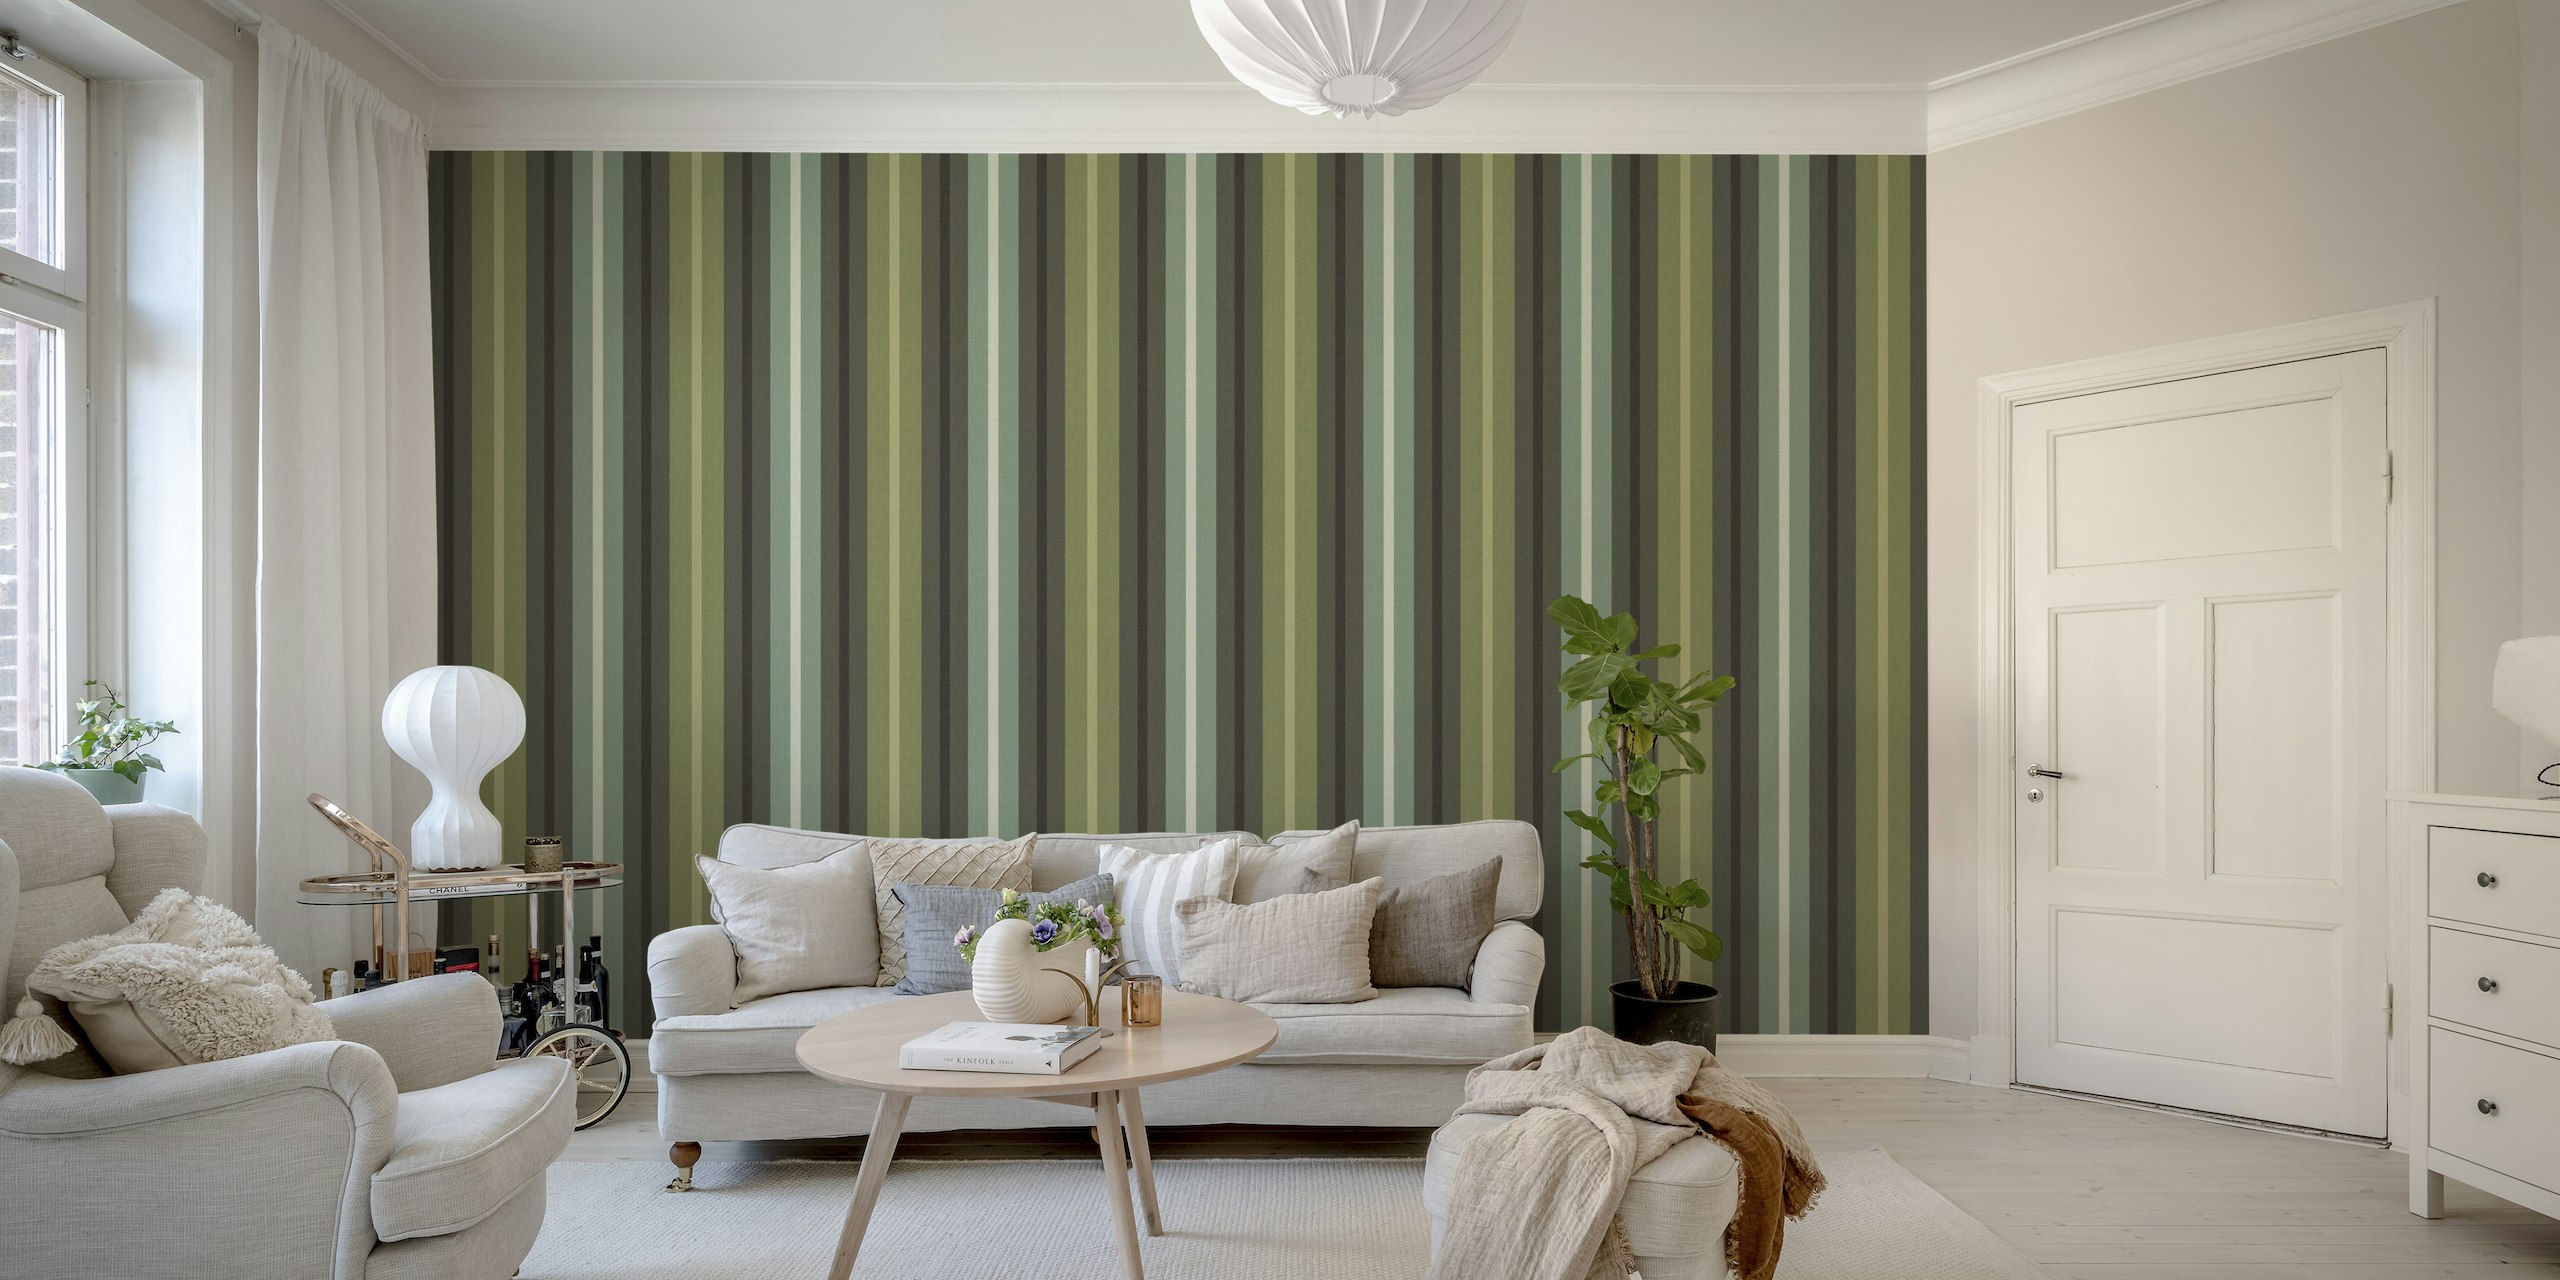 Fotomural vinílico de parede com listras texturizadas de serapilheira verde com vários tons de verde